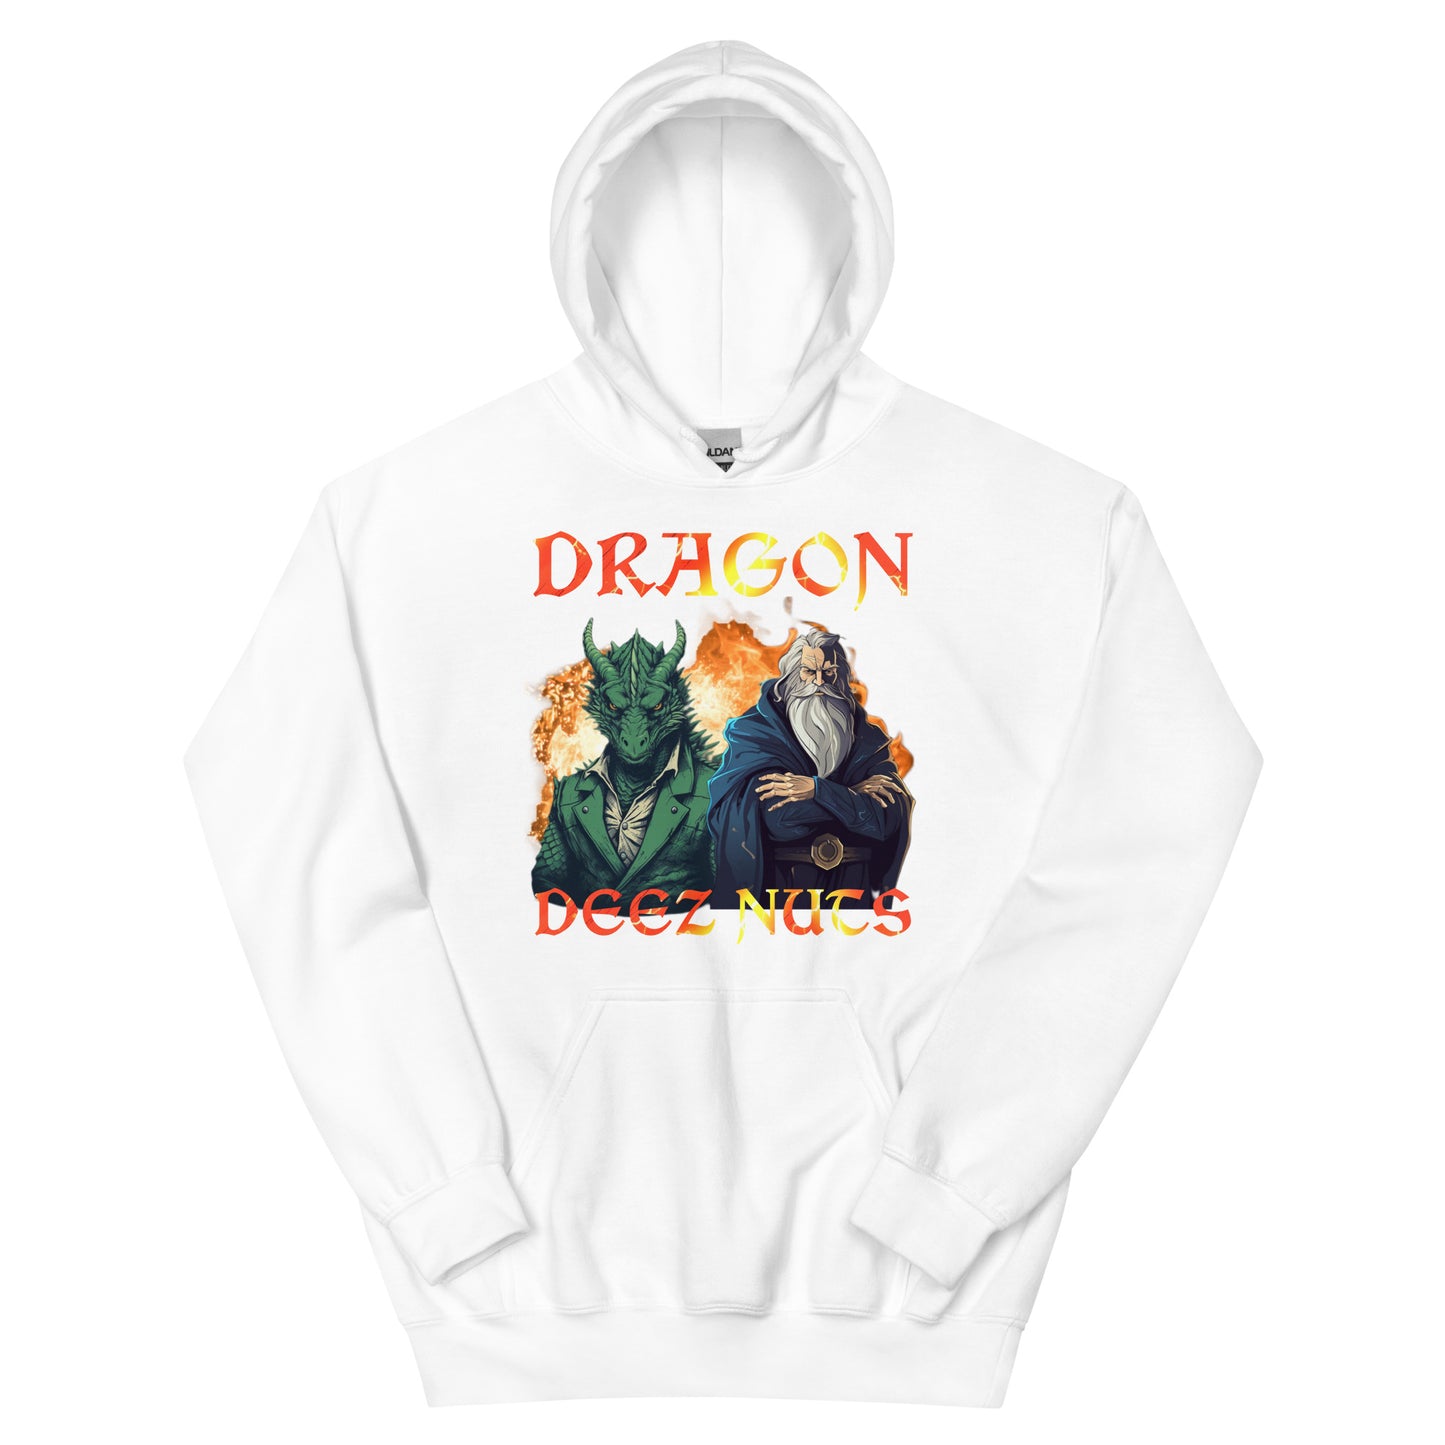 Dragon deez nutz (hoodie)